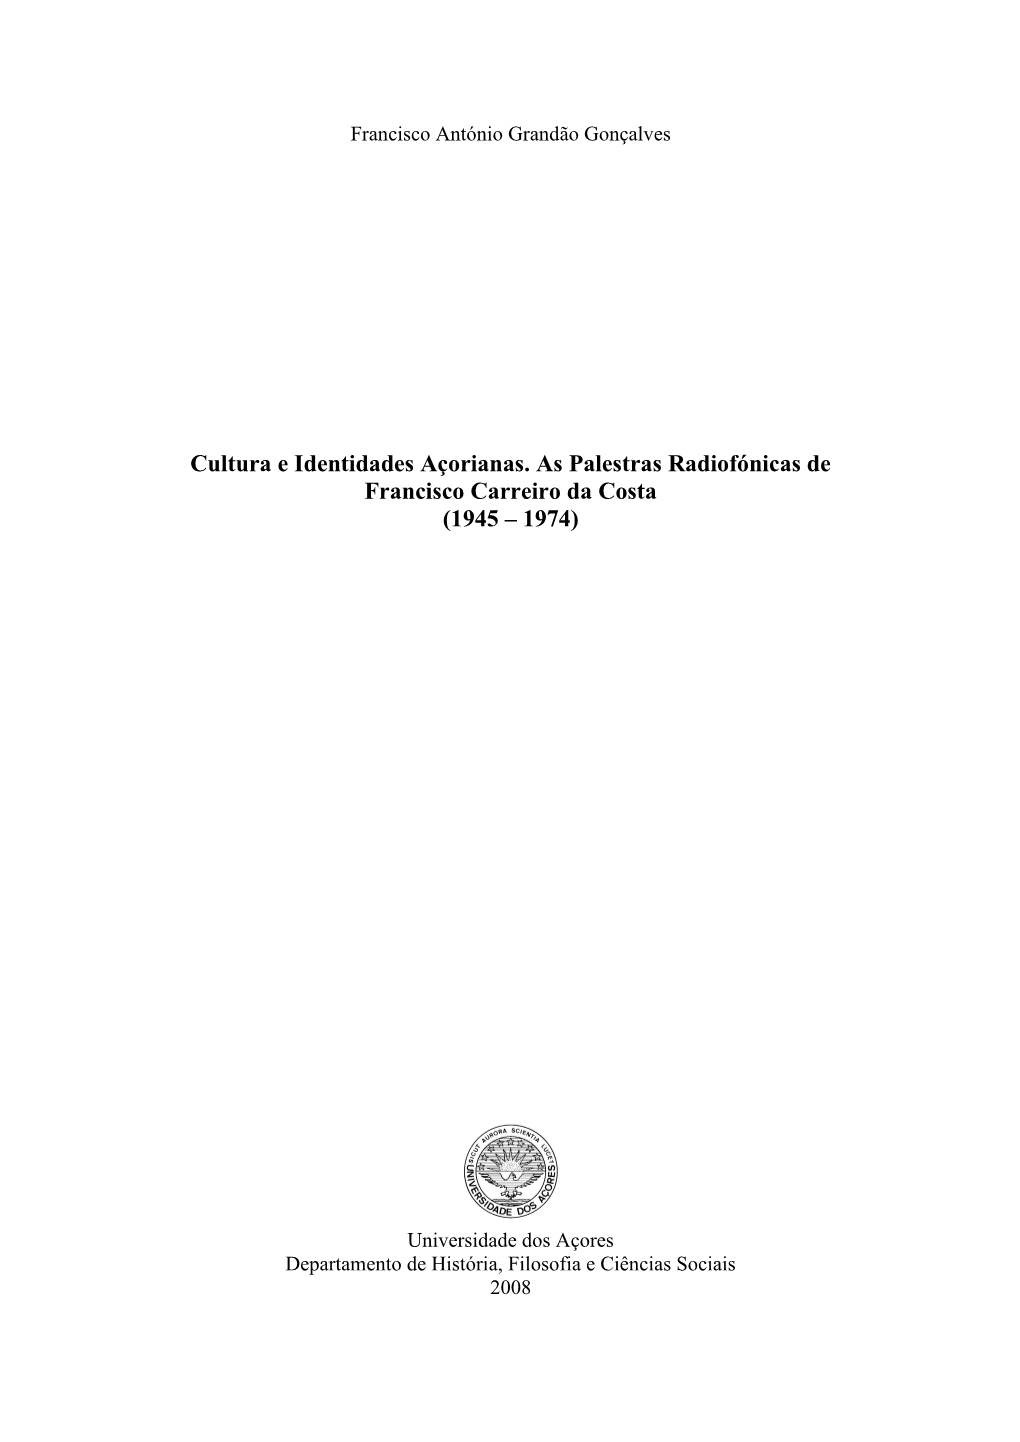 Cultura E Identidades Açorianas. As Palestras Radiofónicas De Francisco Carreiro Da Costa (1945 – 1974)